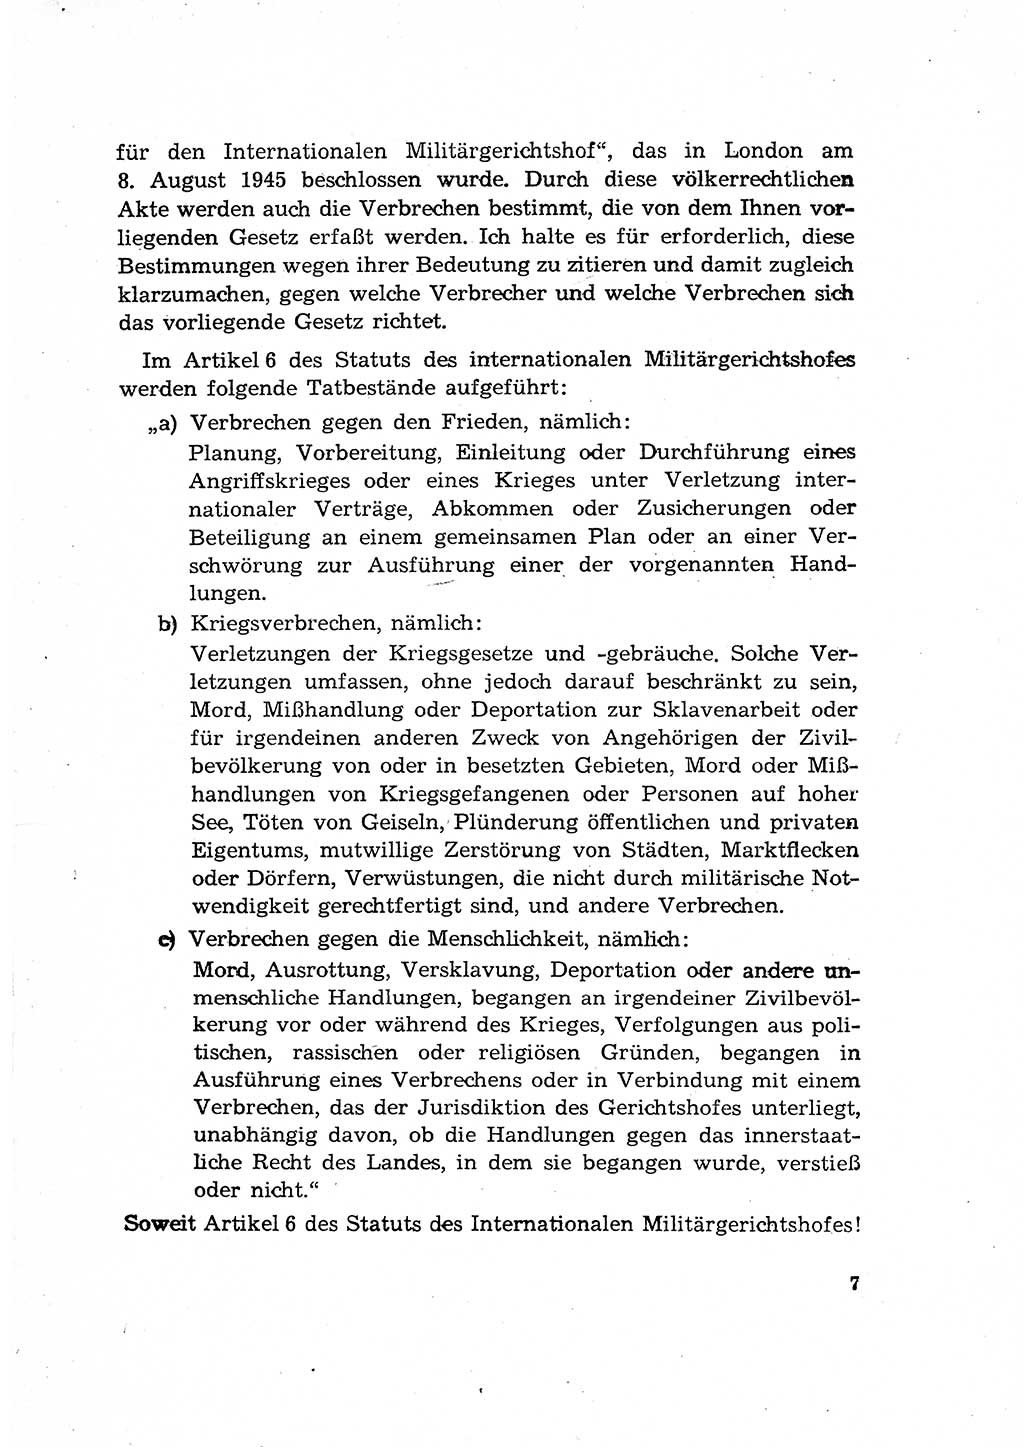 Bestrafung der Nazi- und Kriegsverbrecher [Deutsche Demokratische Republik (DDR)] 1964, Seite 7 (Bestr. Nazi-Kr.-Verbr. DDR 1964, S. 7)